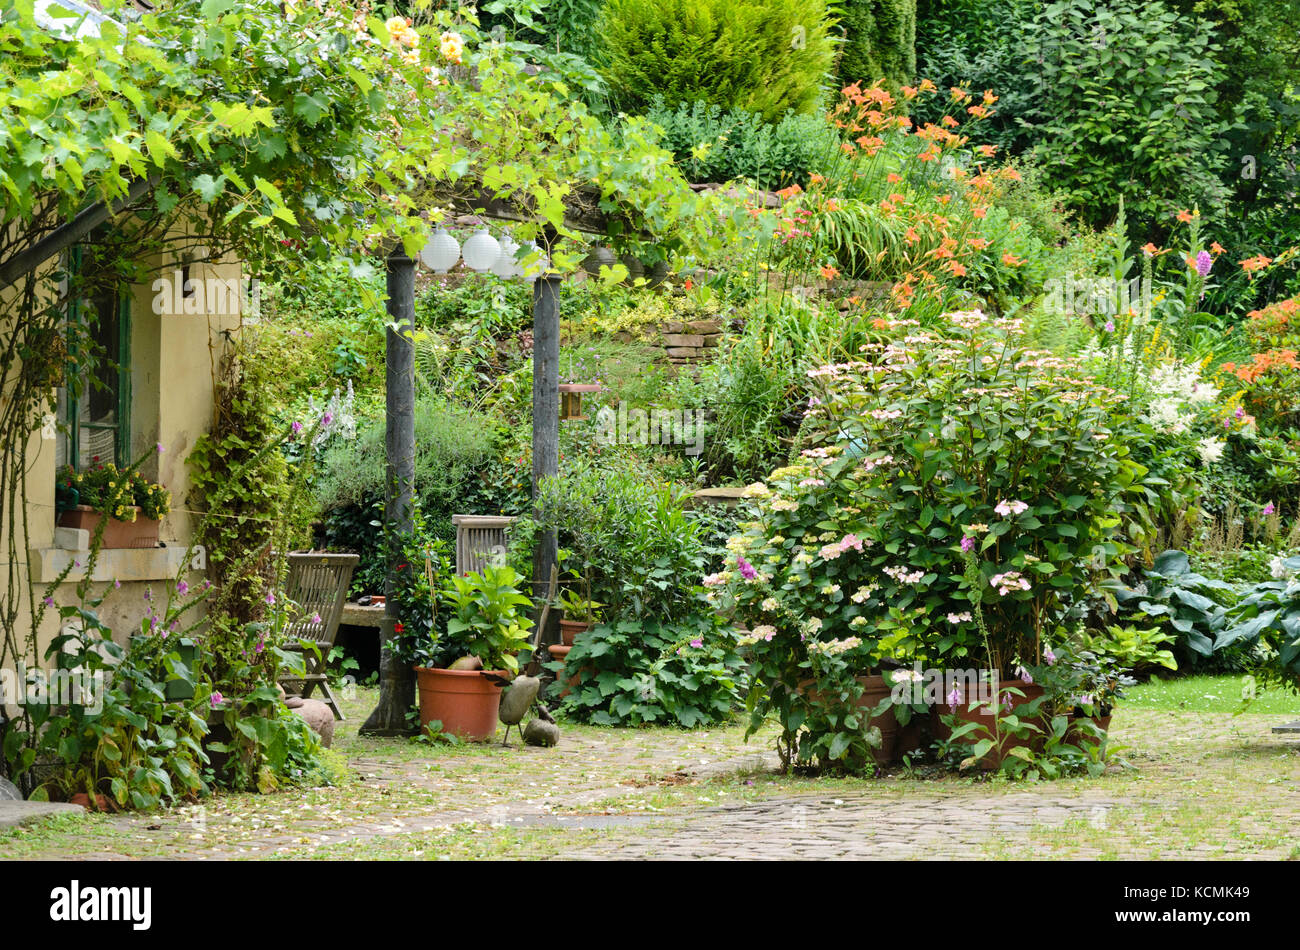 La vigne (Vitis), digitales (digitalis), hortensias (hydrangea) et d'hémérocalles (Hemerocallis) dans un jardin Banque D'Images